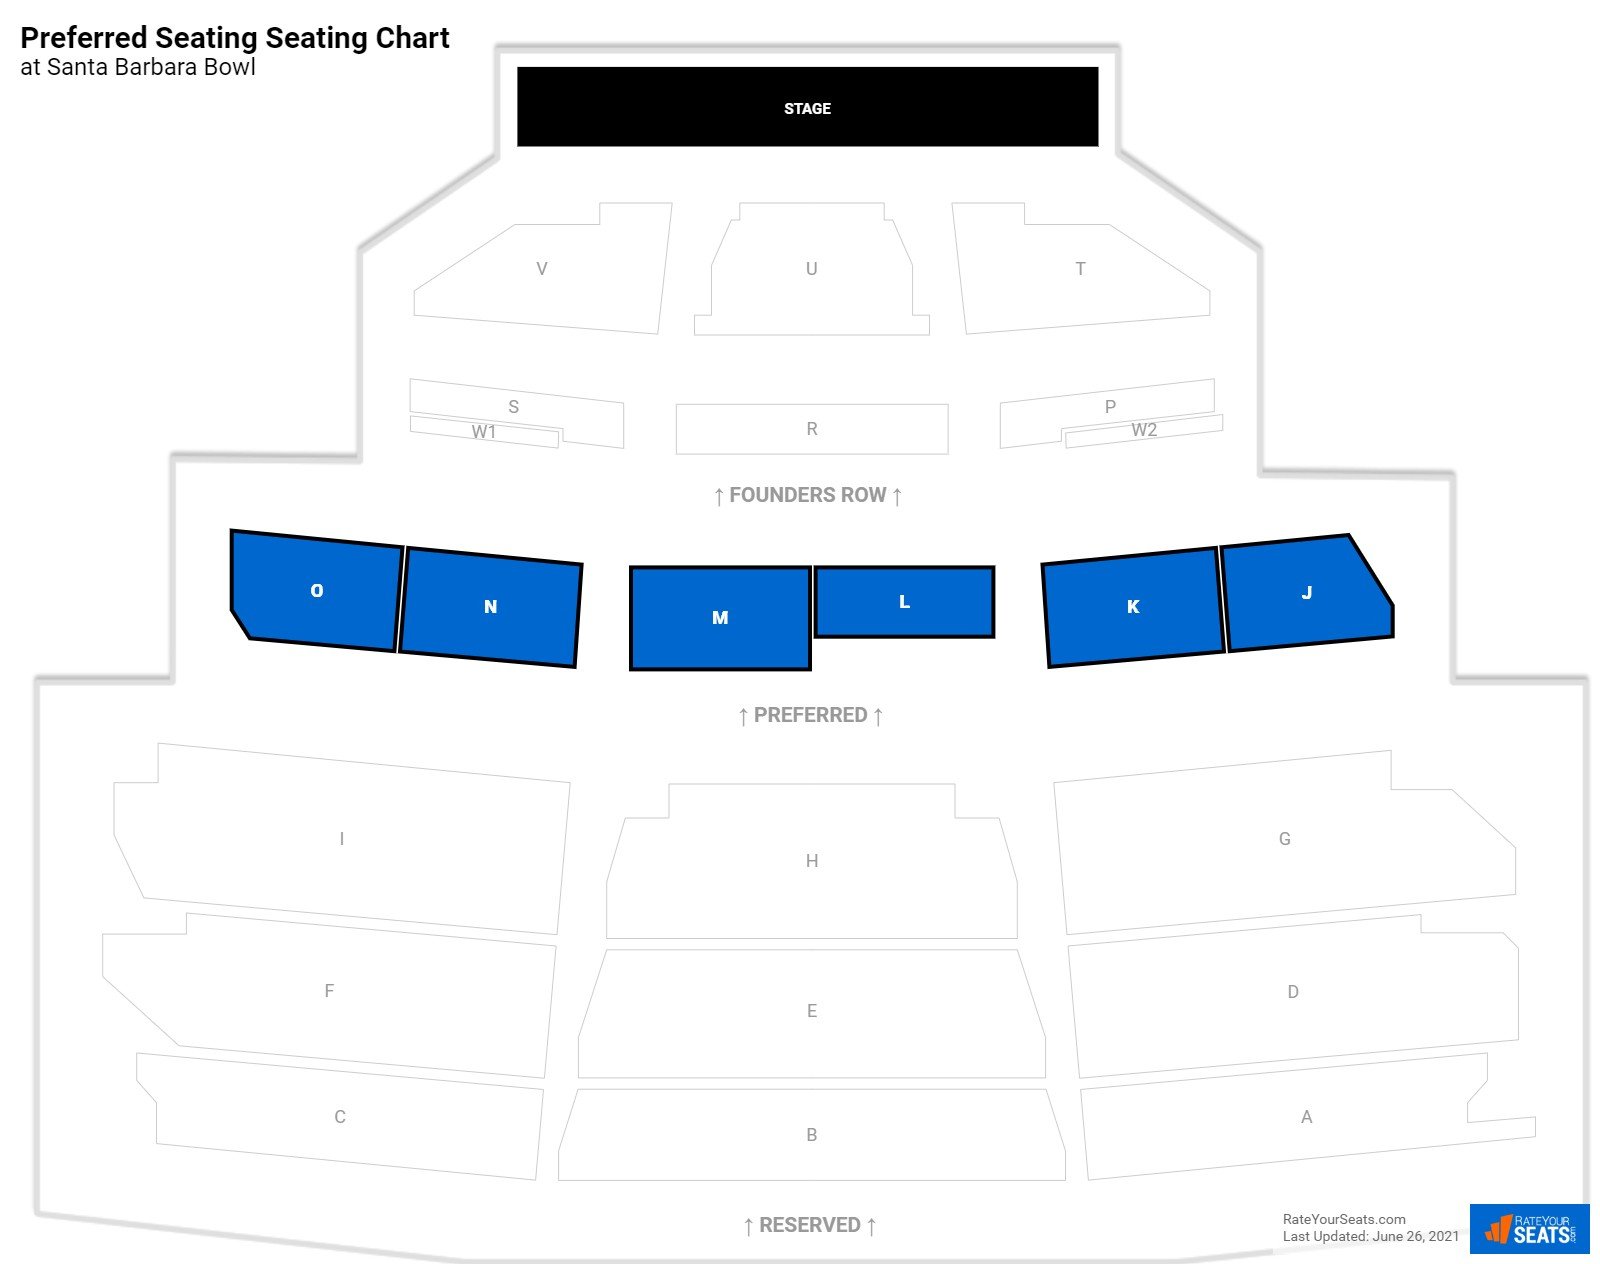 Concert Preferred Seating Seating Chart at Santa Barbara Bowl